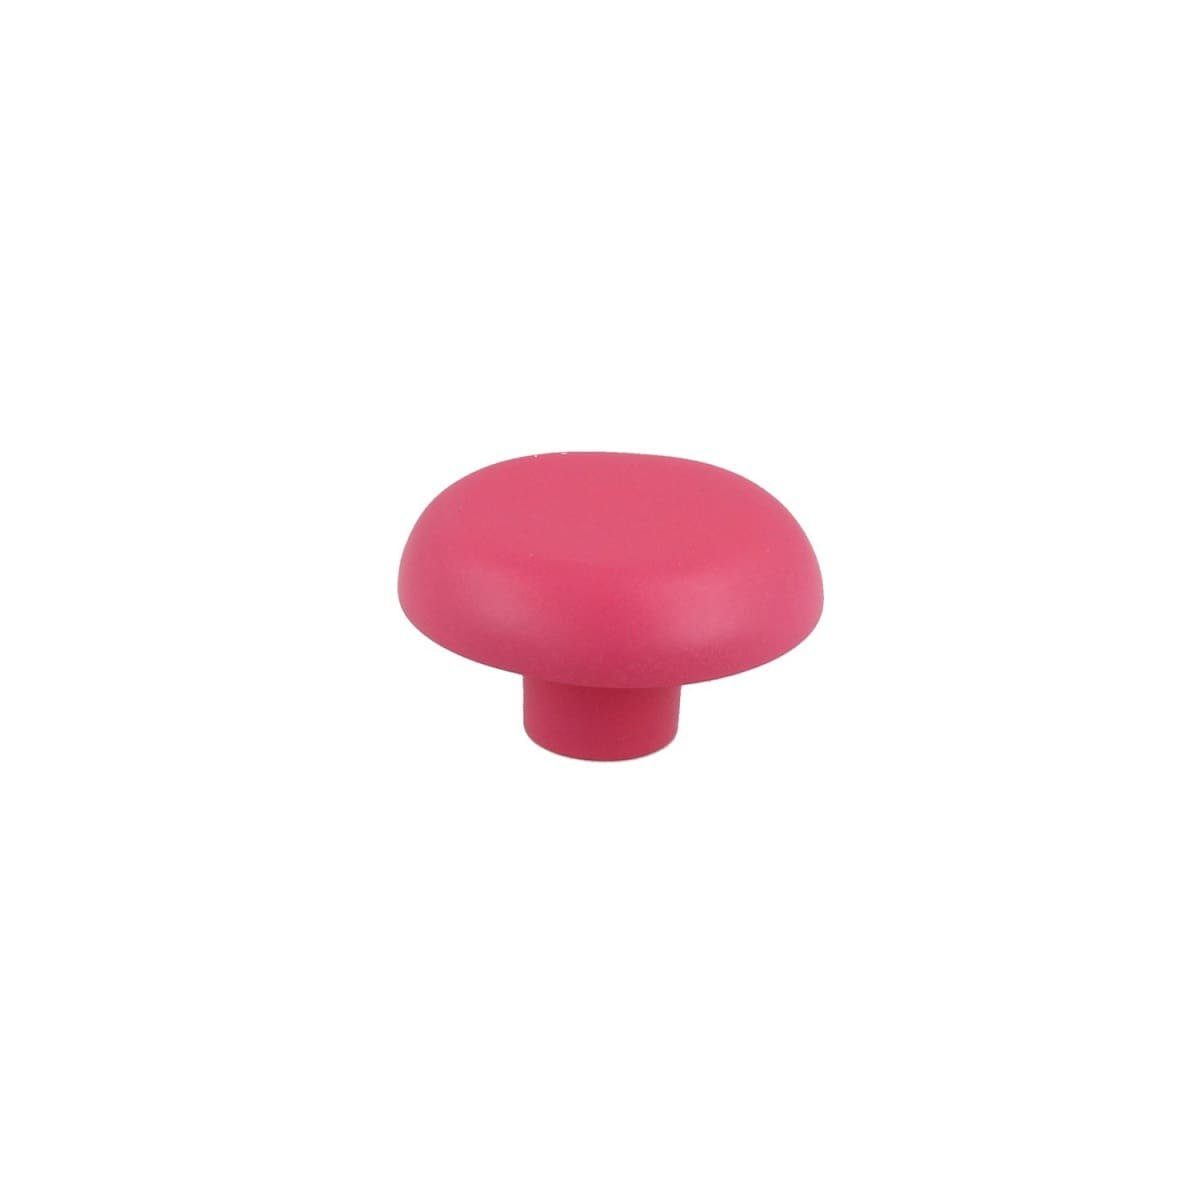 MS Beschläge Türbeschlag Pilz Kindermöbelknopf Modell Möbelknopf Rosa